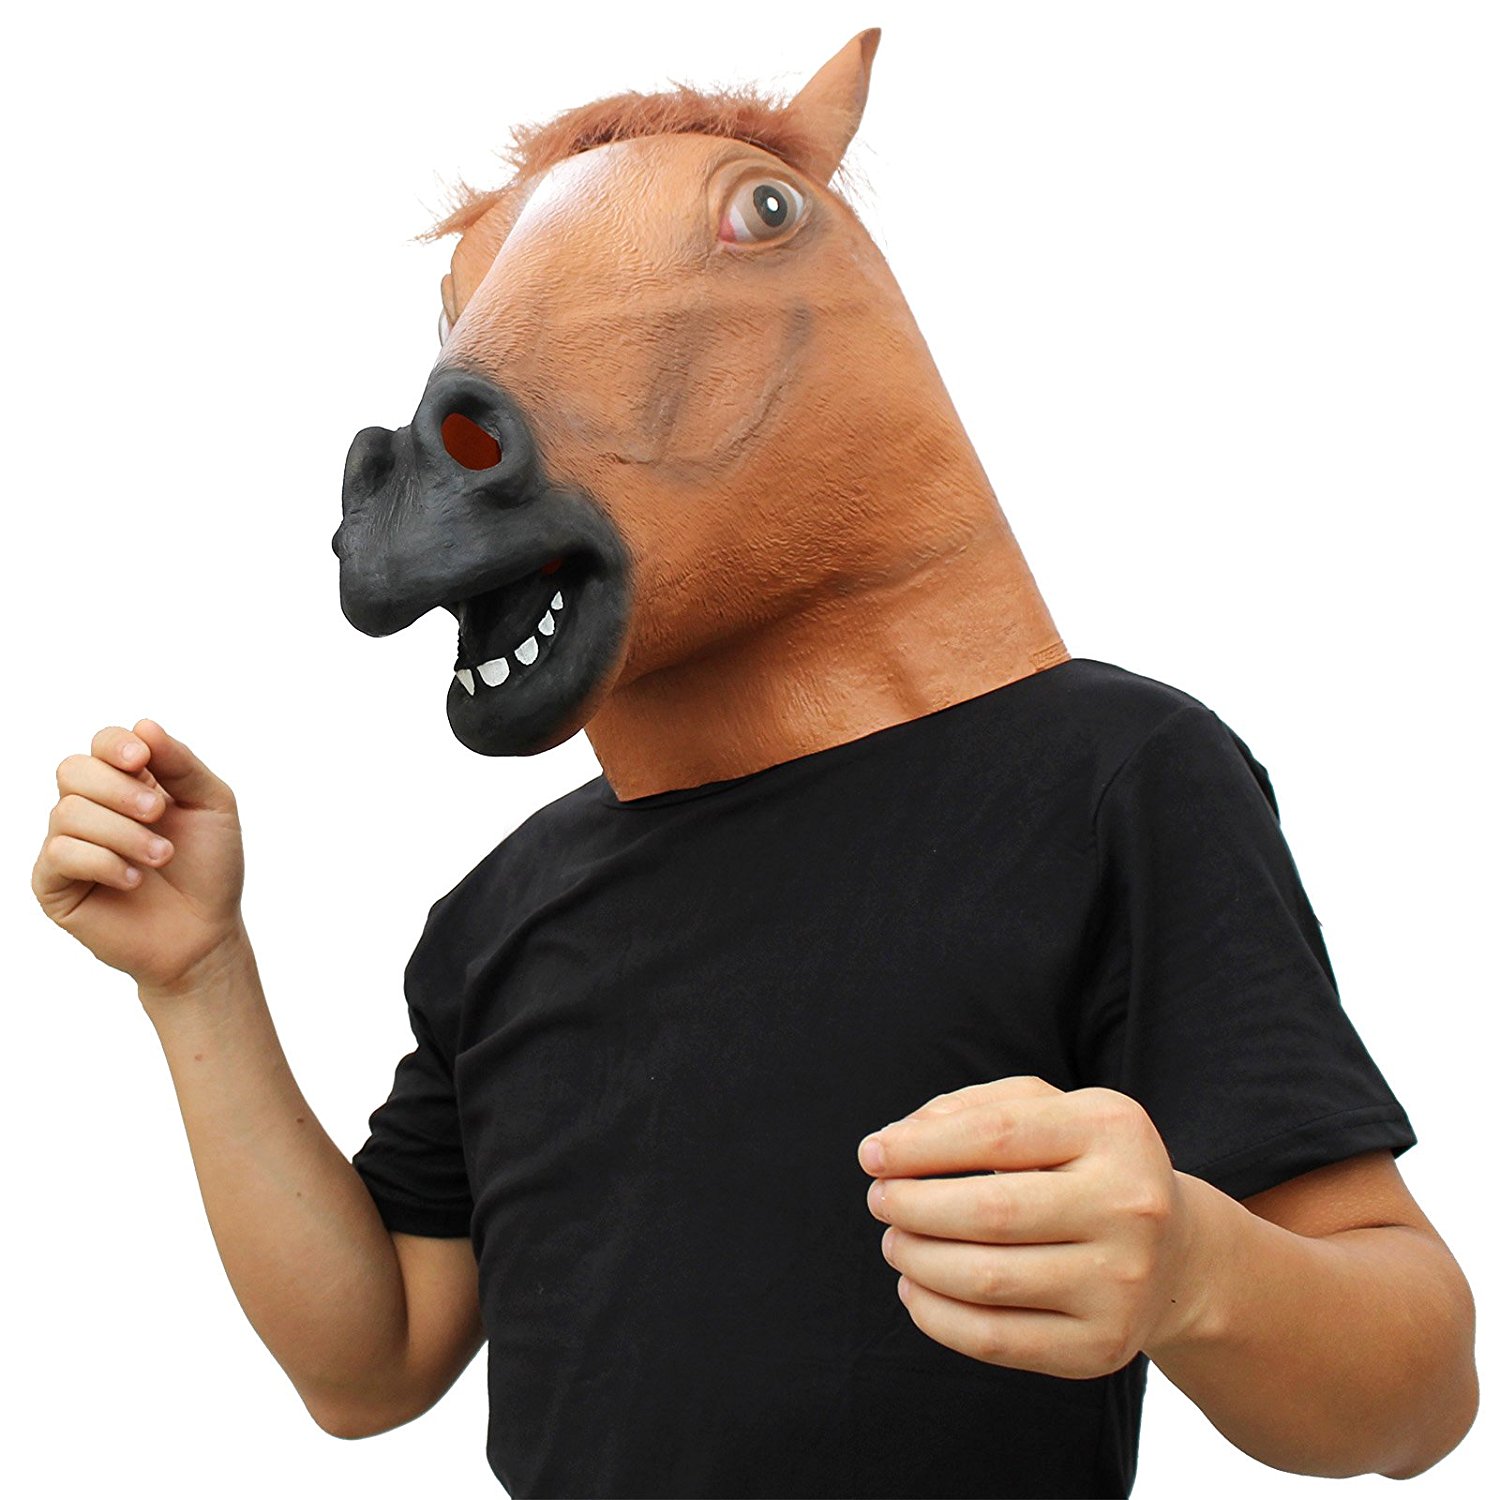 Как сделать карнавальный костюм лошади своими руками: два варианта